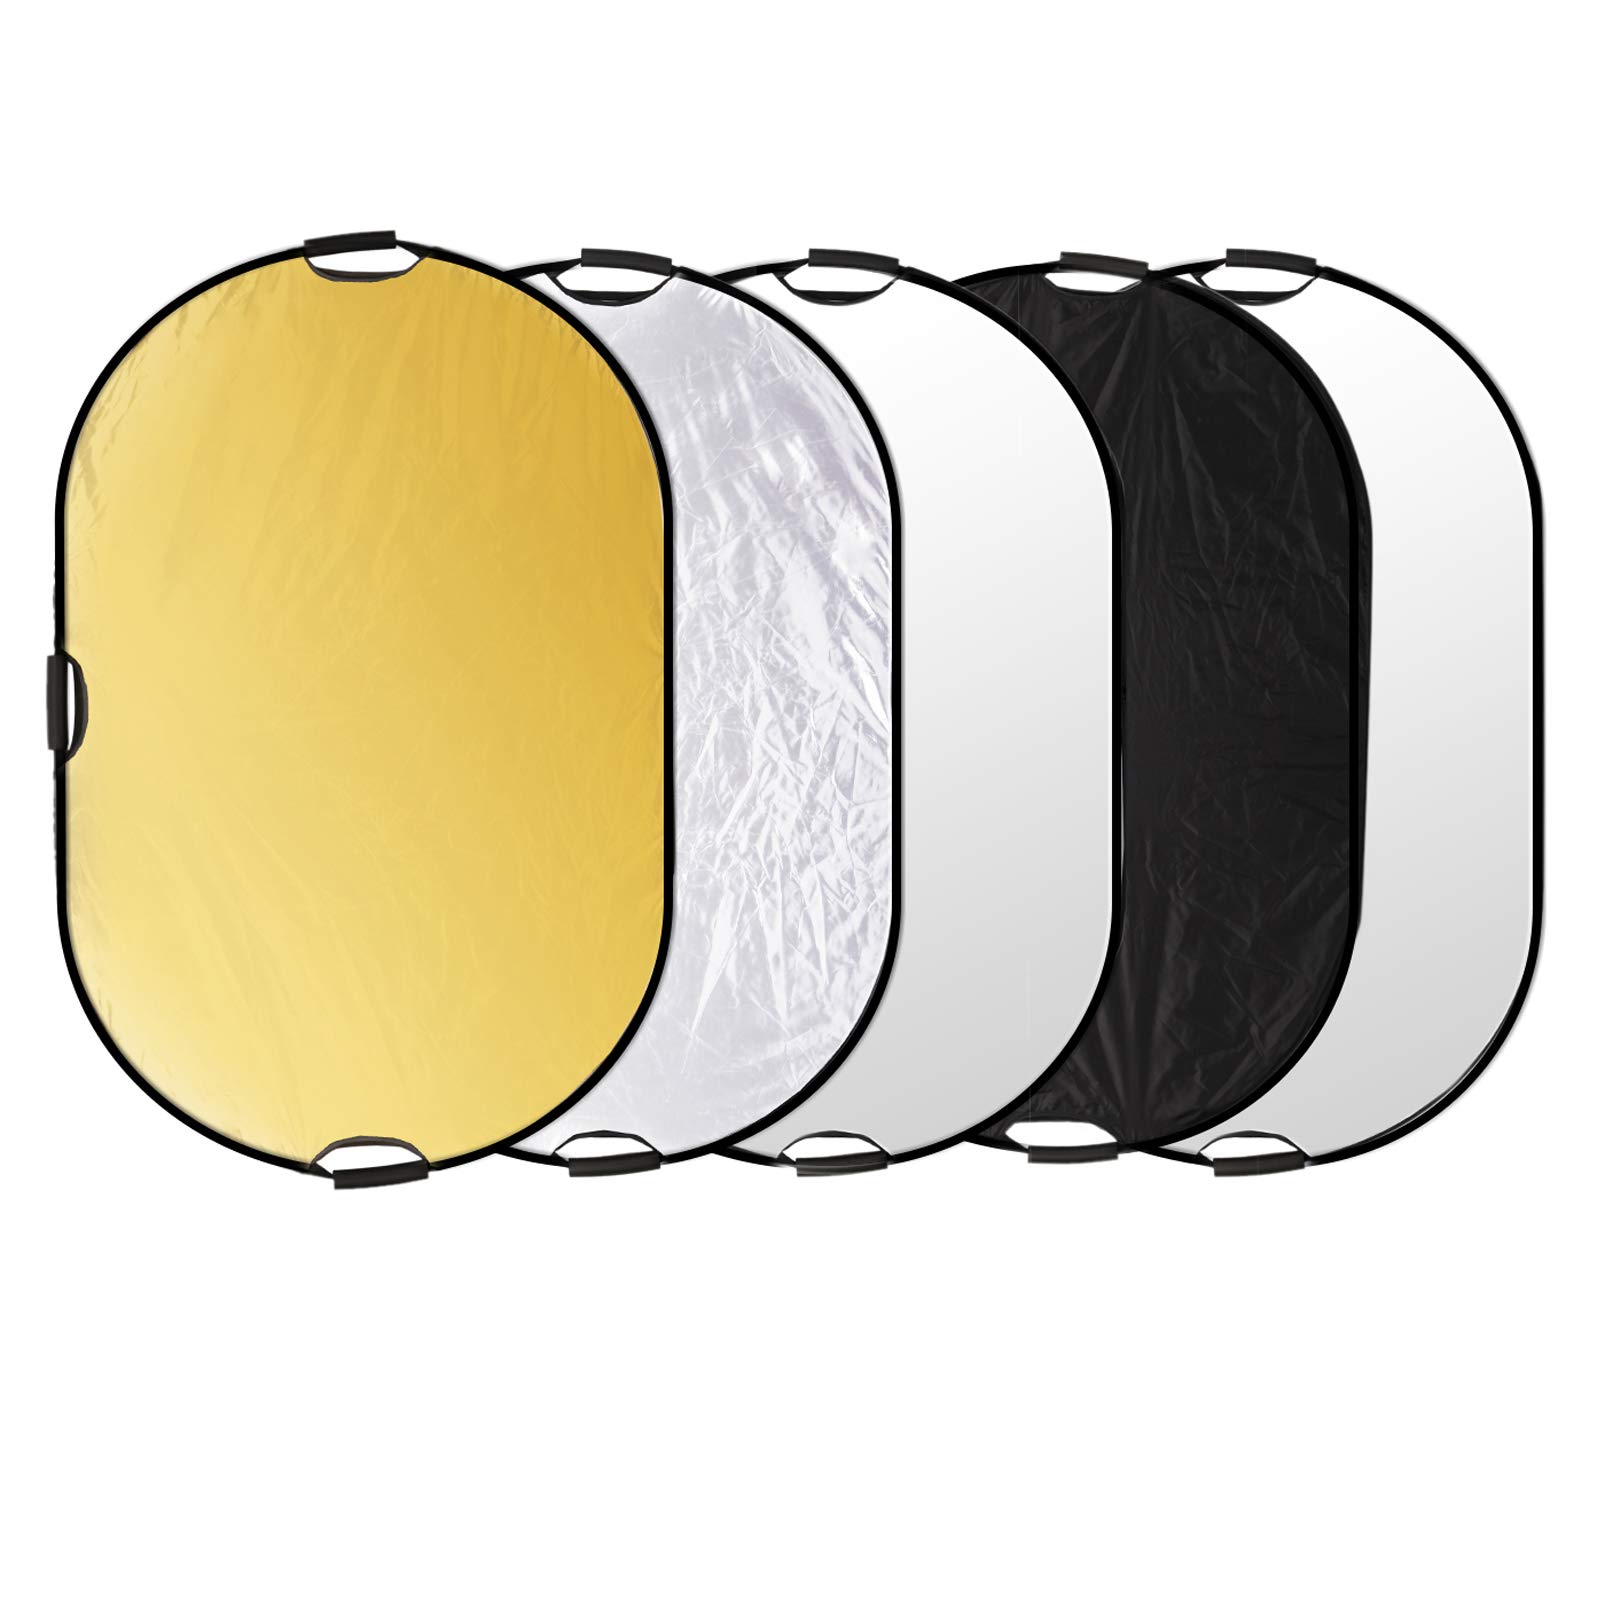 Selens 5-in-1 120*180cm Oval Fotografie Faltreflektor Set Tragebar Diffusor Gold, Silber, Weiß, Schwarz und Transparent Reflektor mit Griff